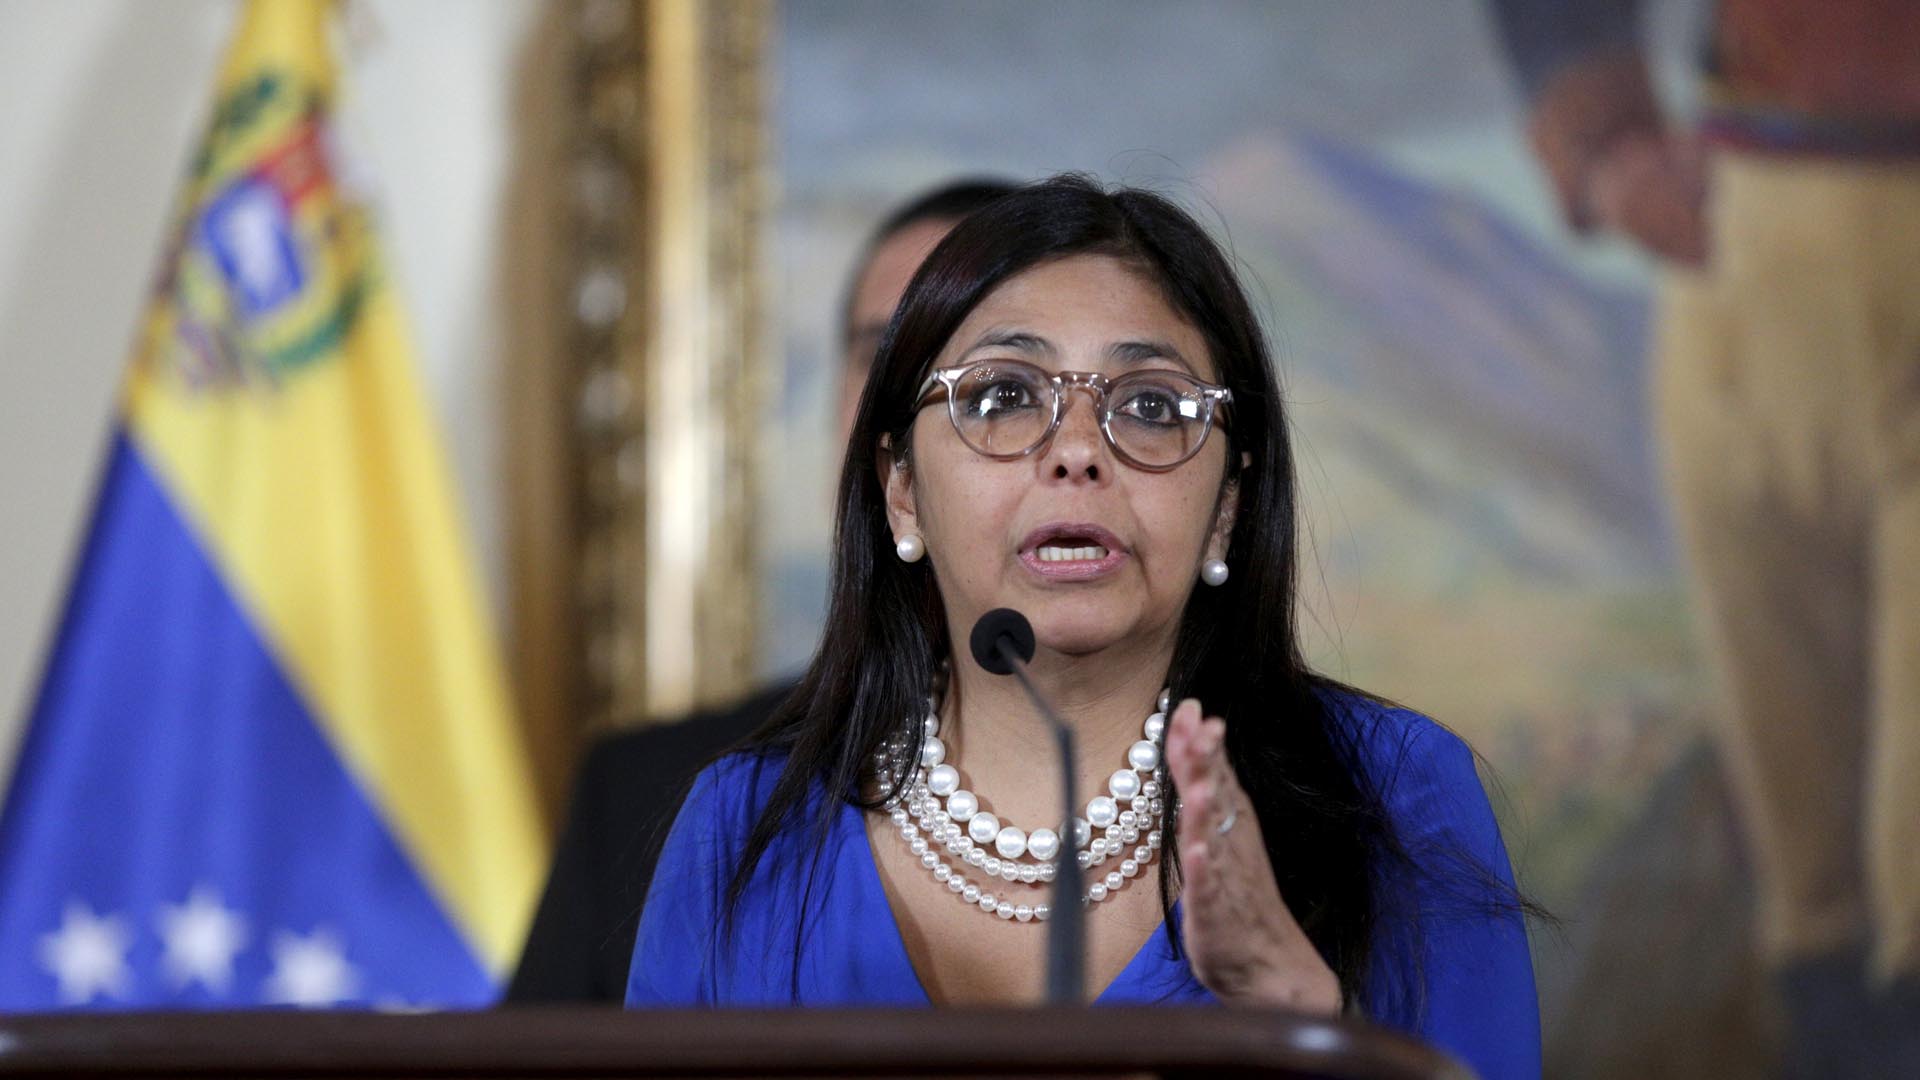 La ministra venezolana de Relaciones Exteriores denunciará "nuevas agresiones" por parte de Estados Unidos ante foros internacionales